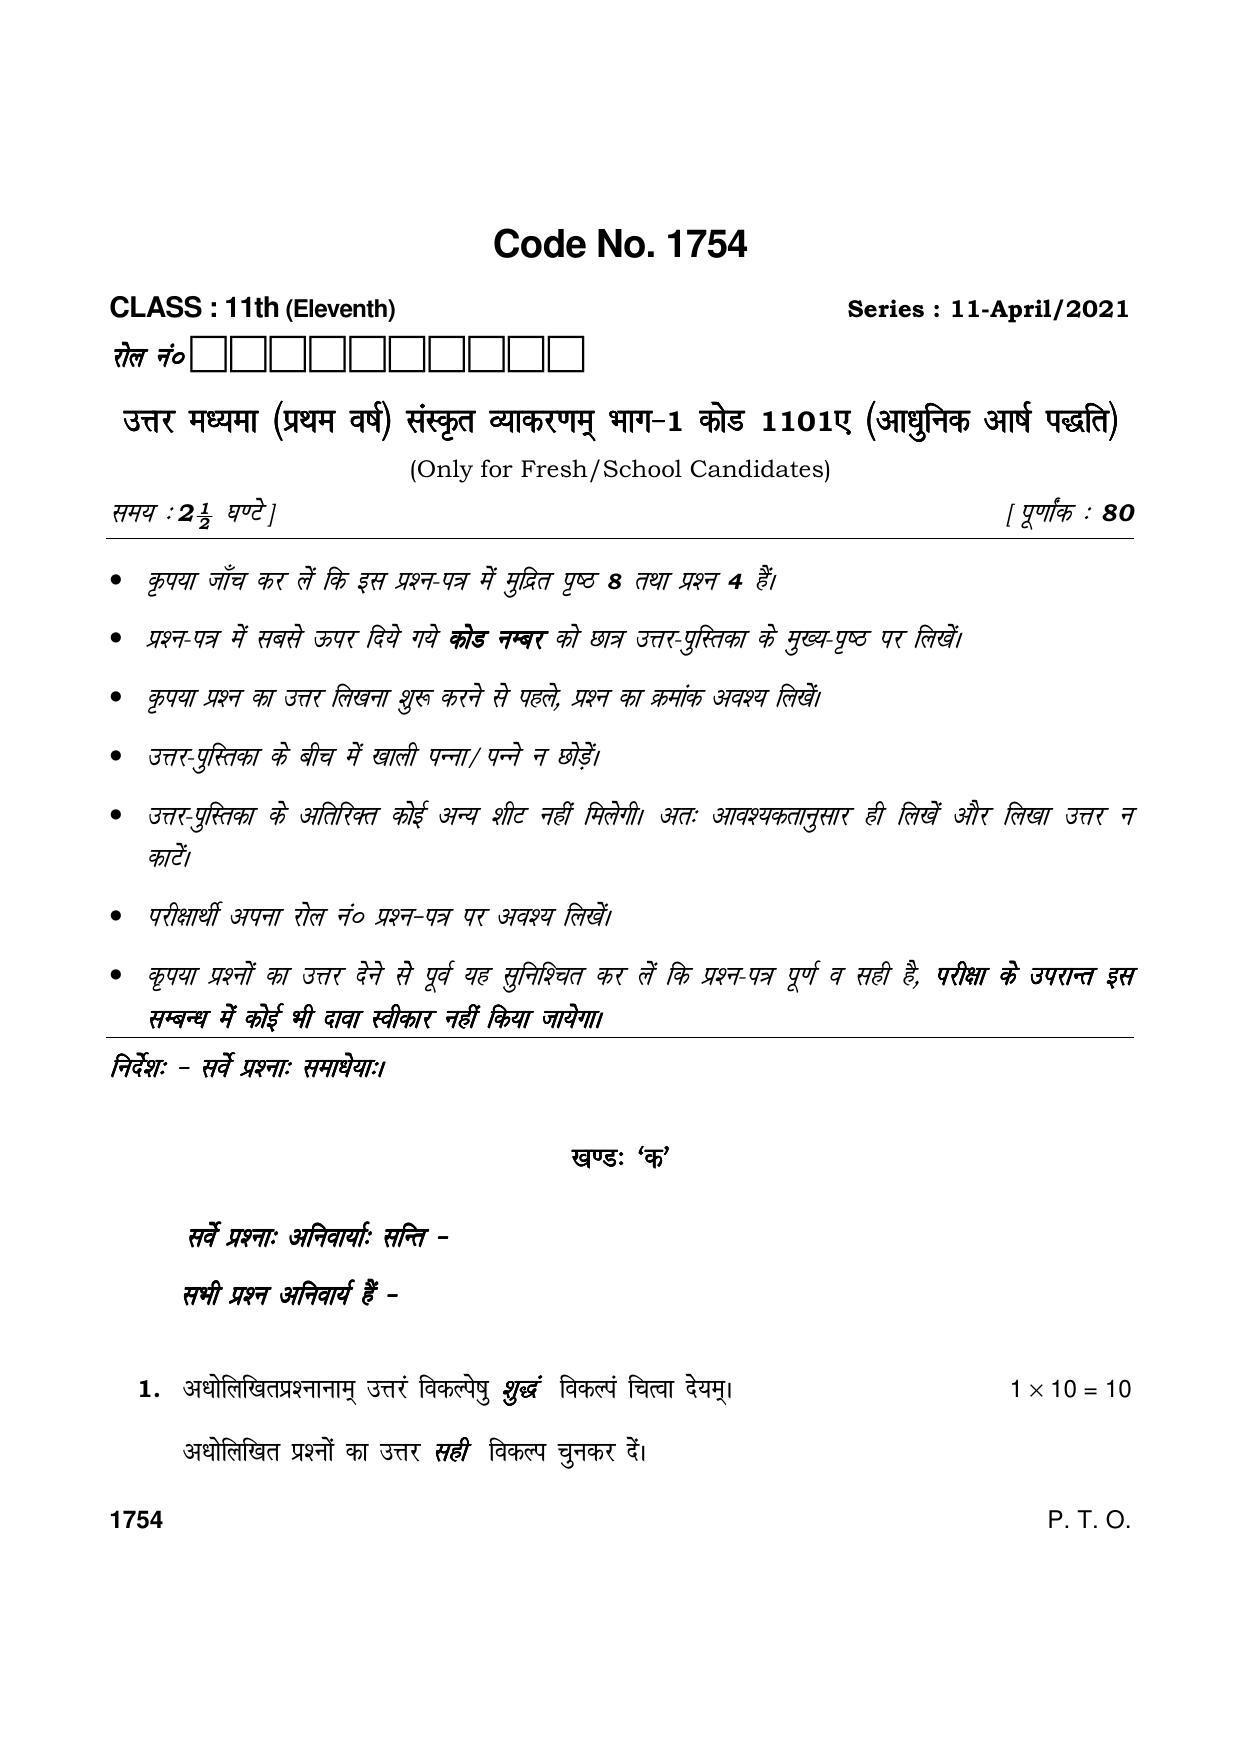 Haryana Board HBSE Class 11 उत्तर मध्यमा कोड 1102A (आधुनिक आर्ष पद्धति) 2021 Question Paper - Page 1